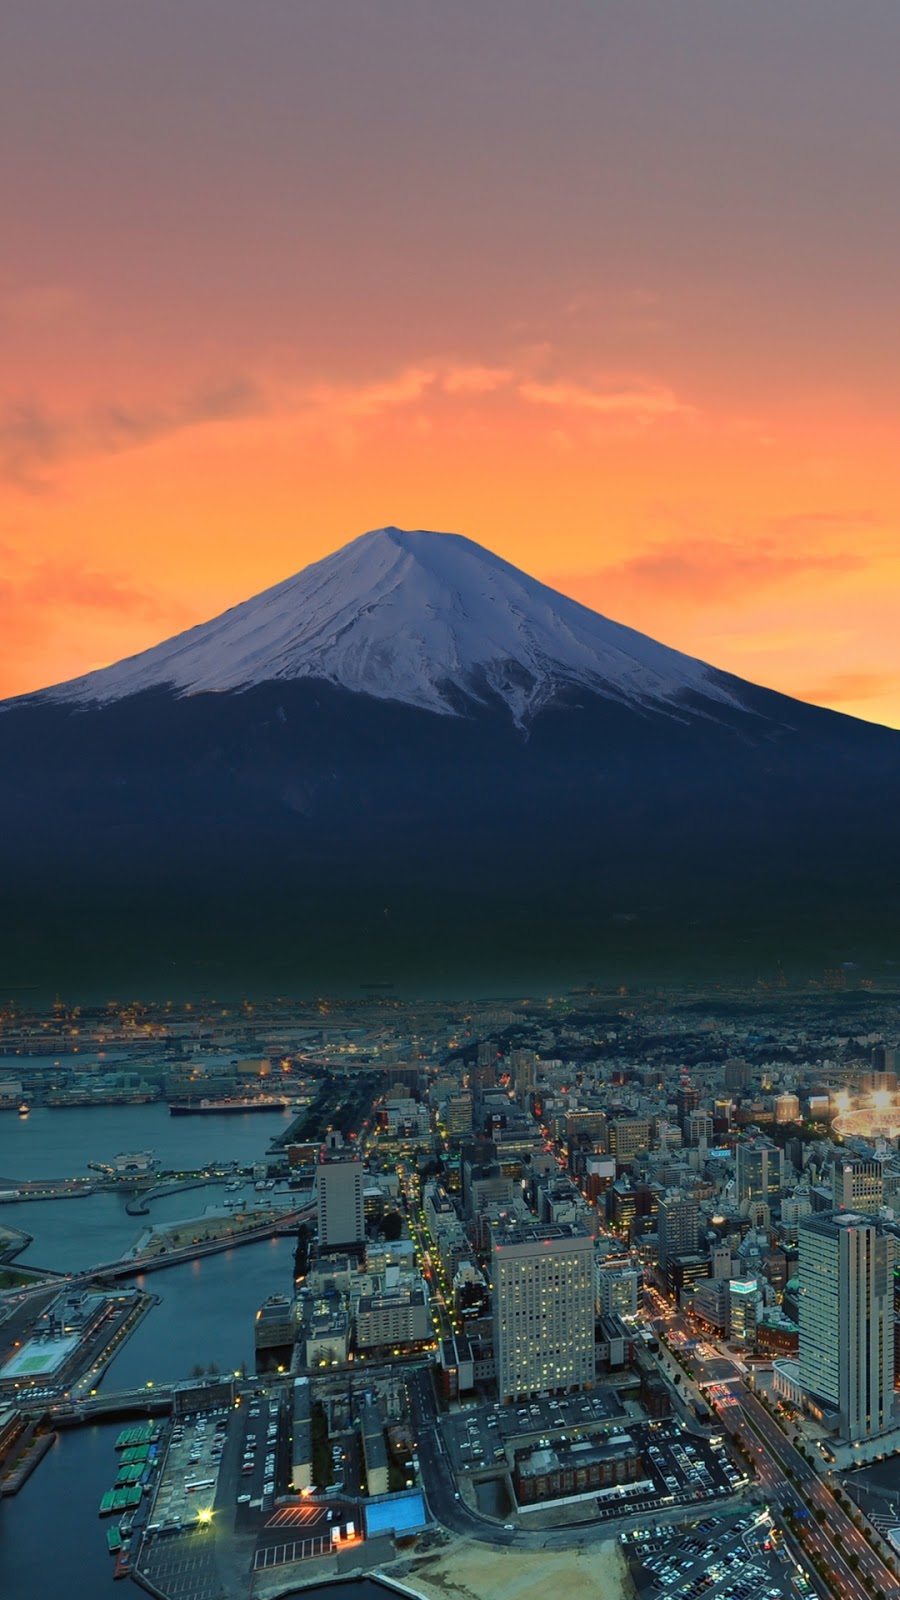 Sunset on Mount Fuji,Tokyo [1080 x 1920]